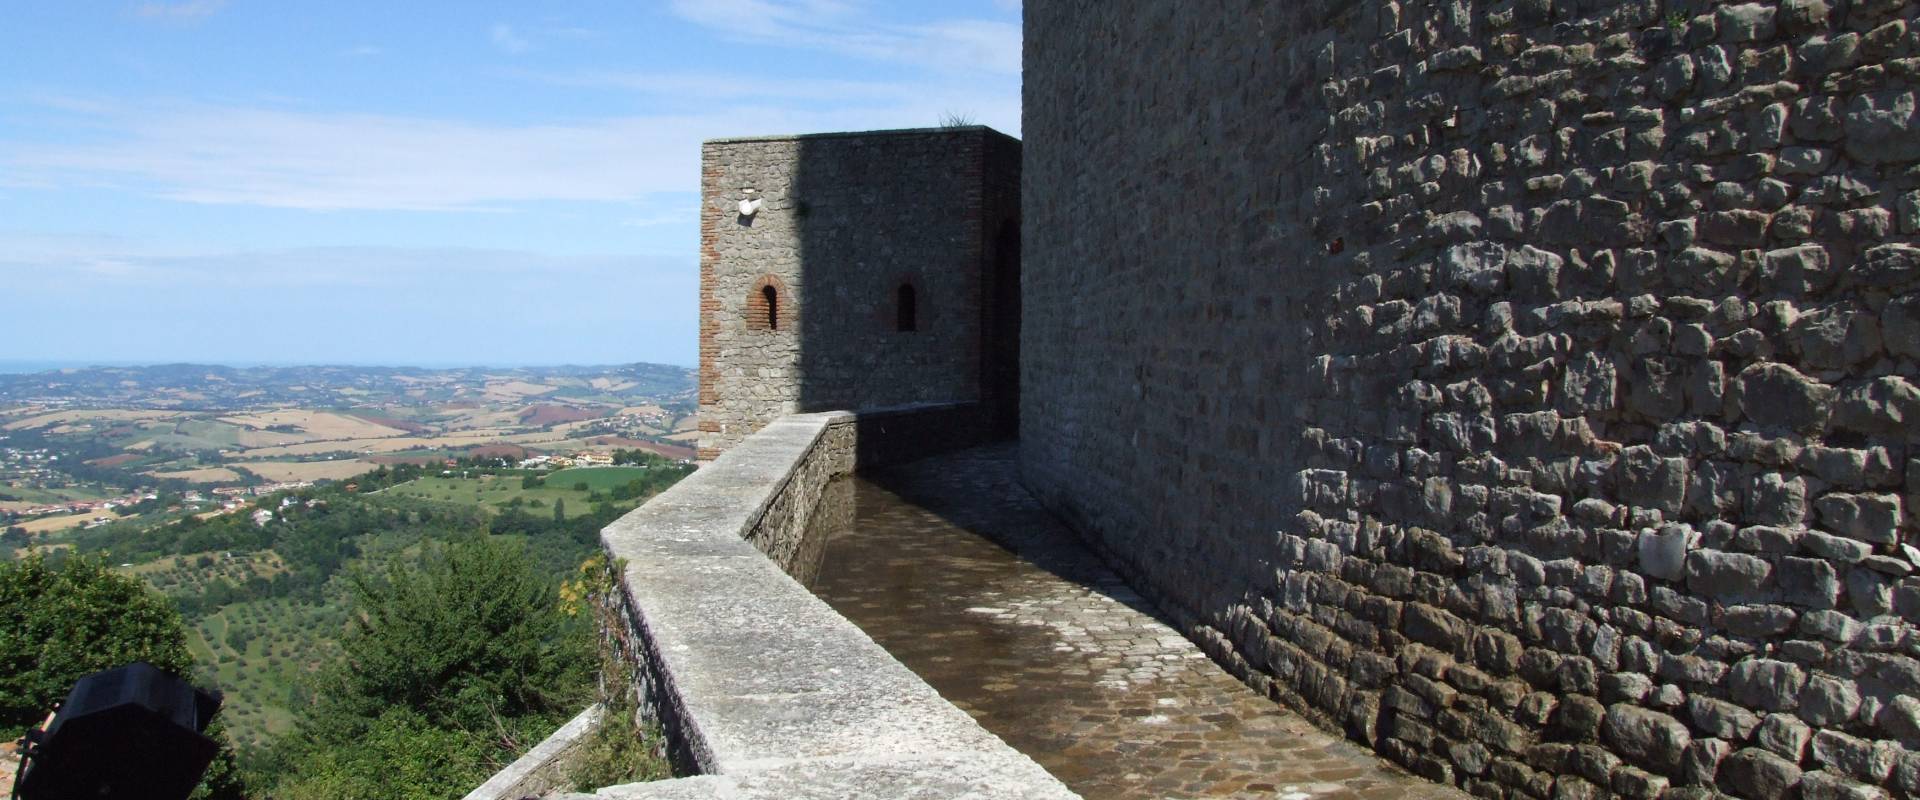 Rocca Malatestiana - Montefiore Conca 15 foto di Diego Baglieri